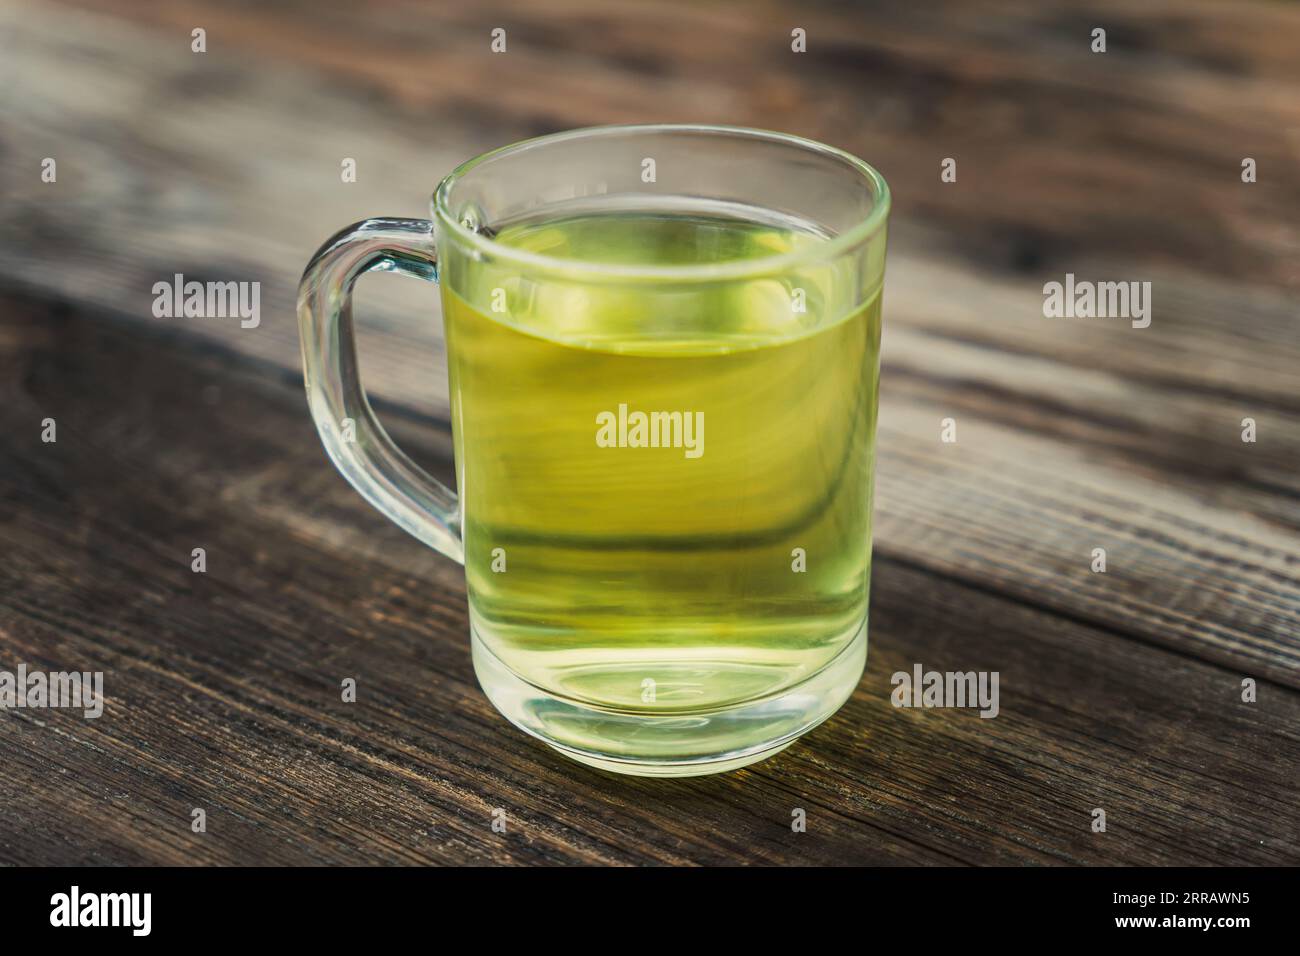 thé dans une tasse en verre sur une table en bois, boisson chaude saine et remède maison contre la toux, les maux de gorge, les problèmes digestifs, la gingivite et la transpiration, vert foncé Banque D'Images